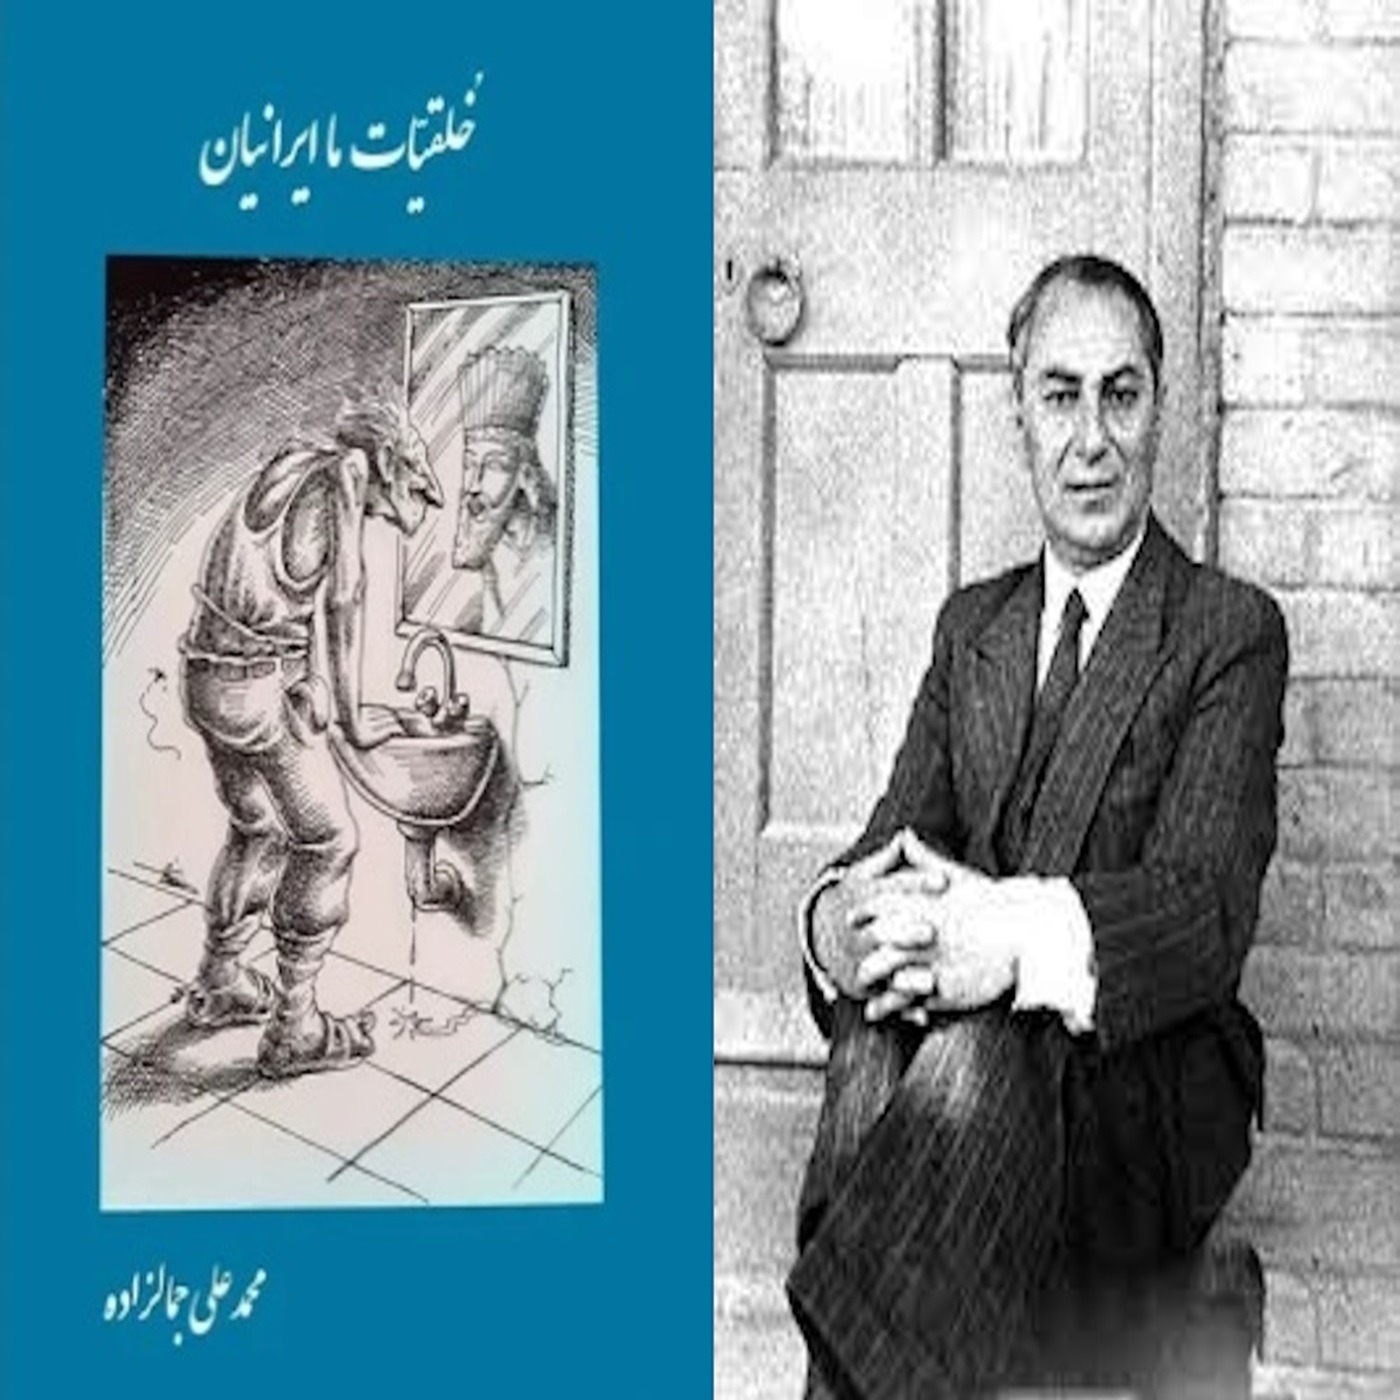 خلقیات ما ایرانیان نوشته سید محمدعلی جمالزاده: بخش سه از پنچ